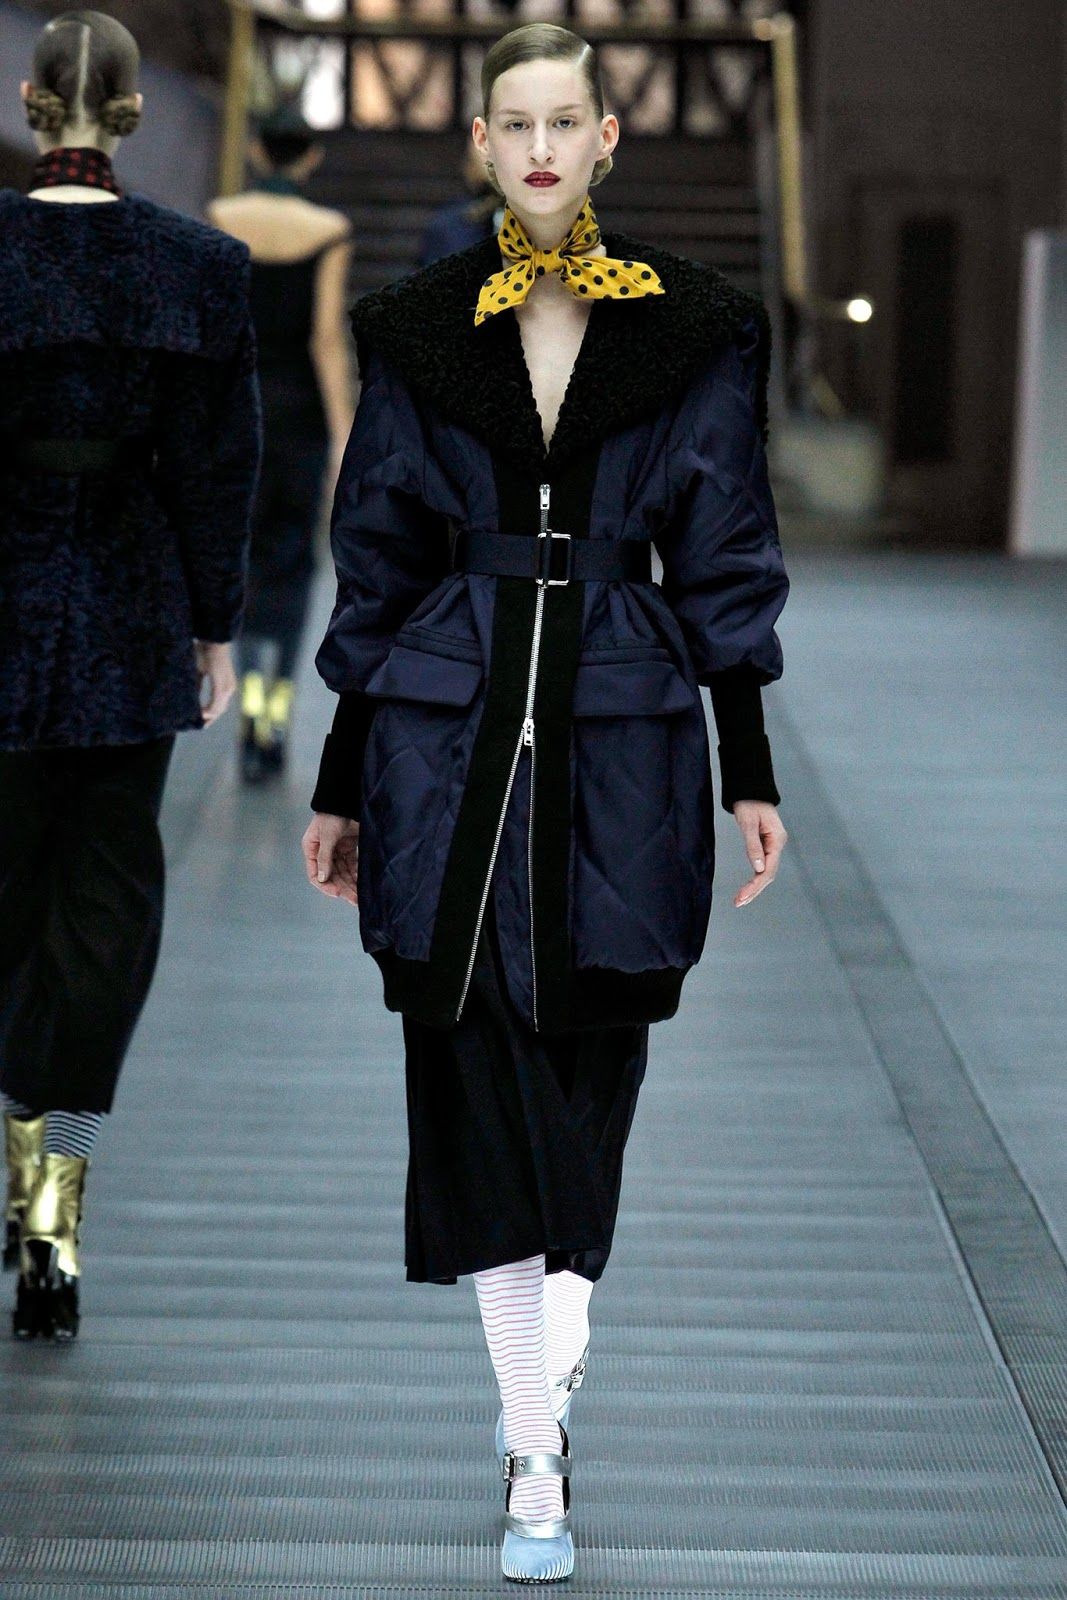 Miu Miu Fall/Winter 2013 collection – Paris fashion week | Fab Fashion Fix